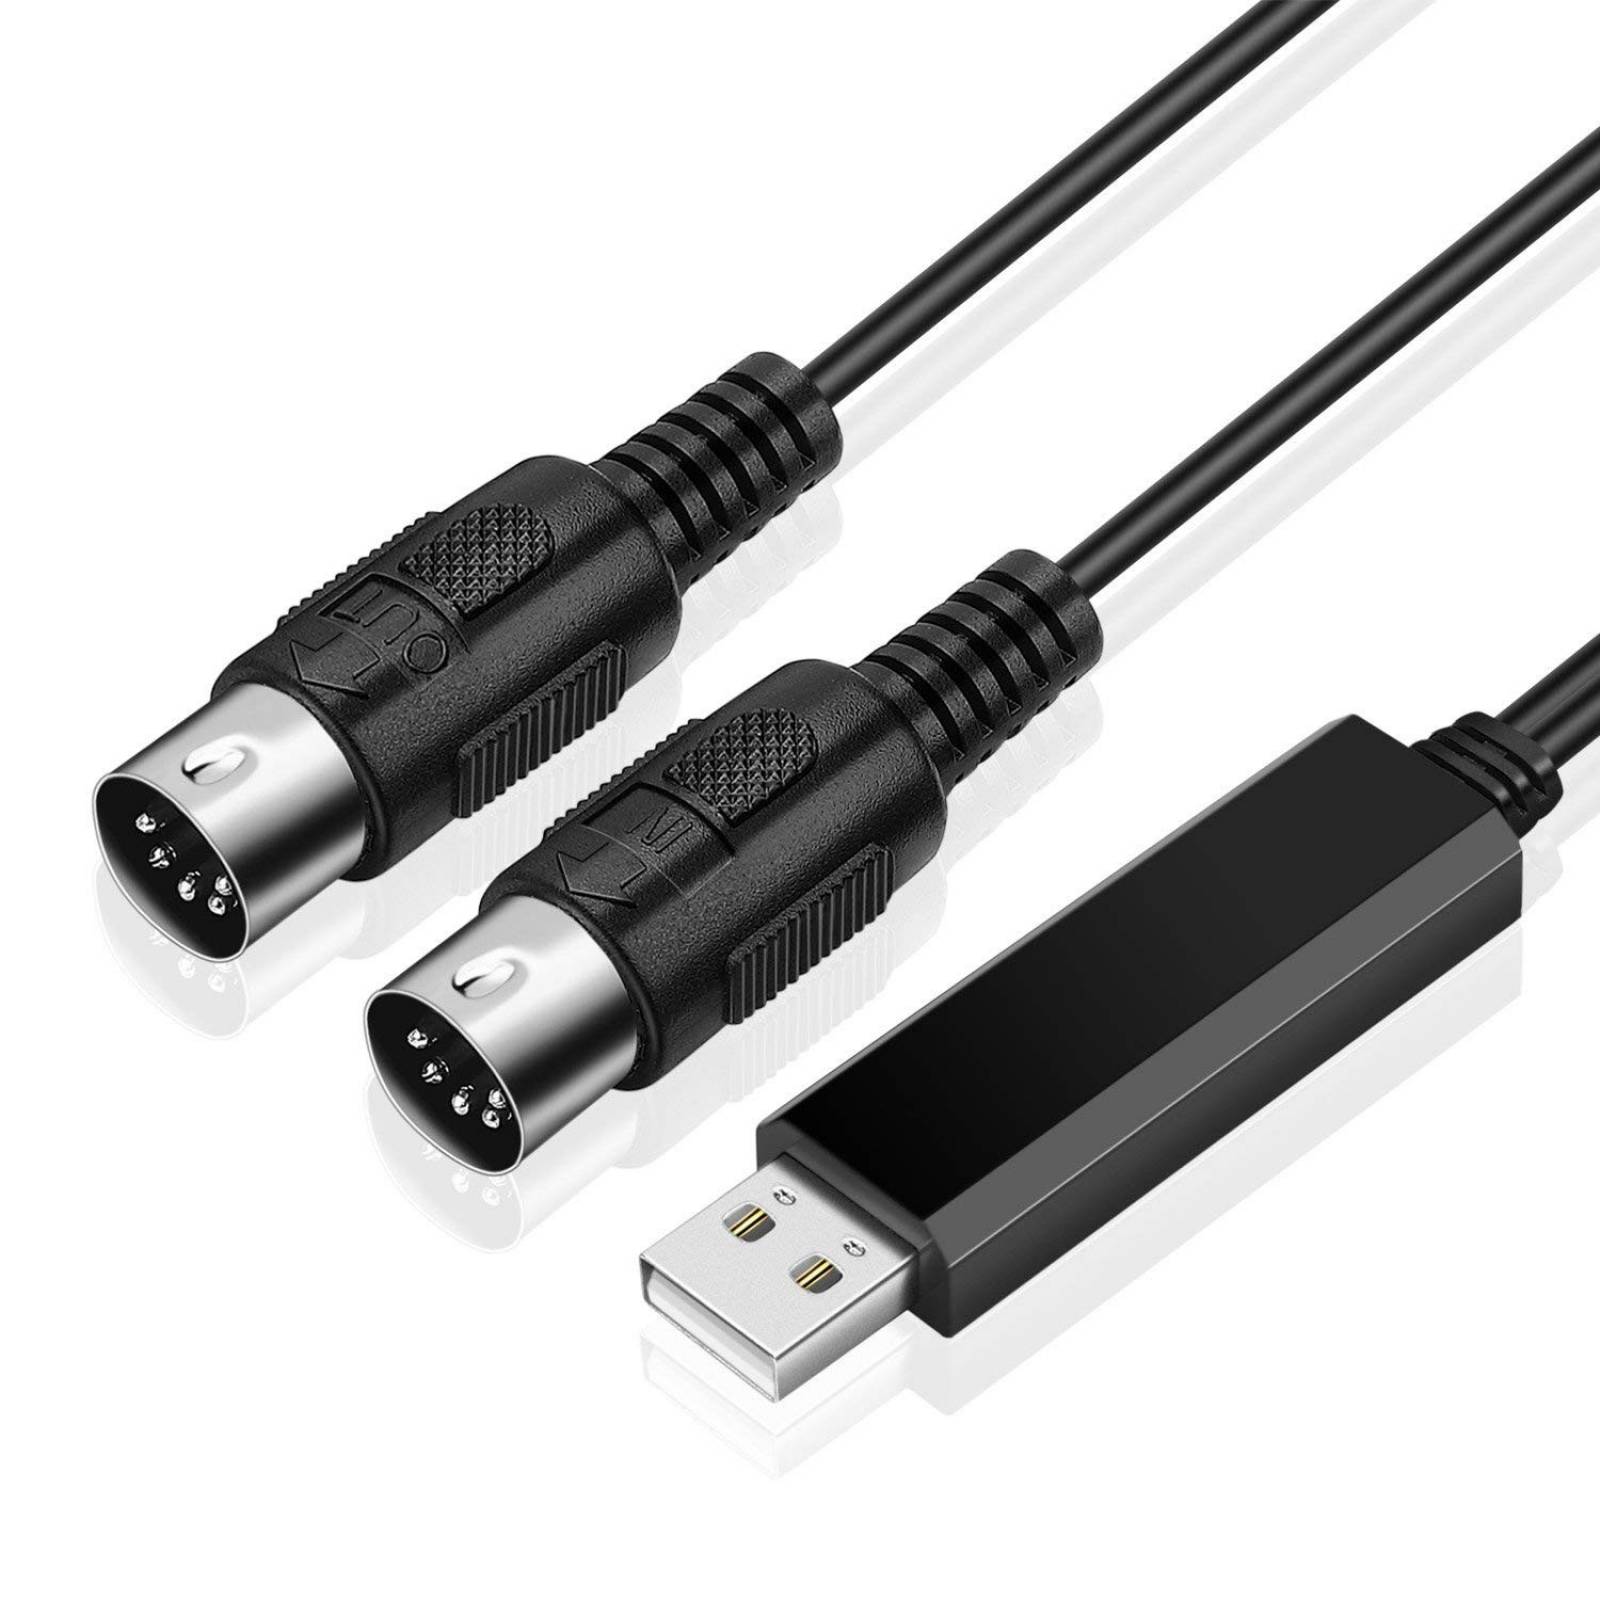 Cable MIDI TNP Products a USB para Mac ordenador PC Laptop